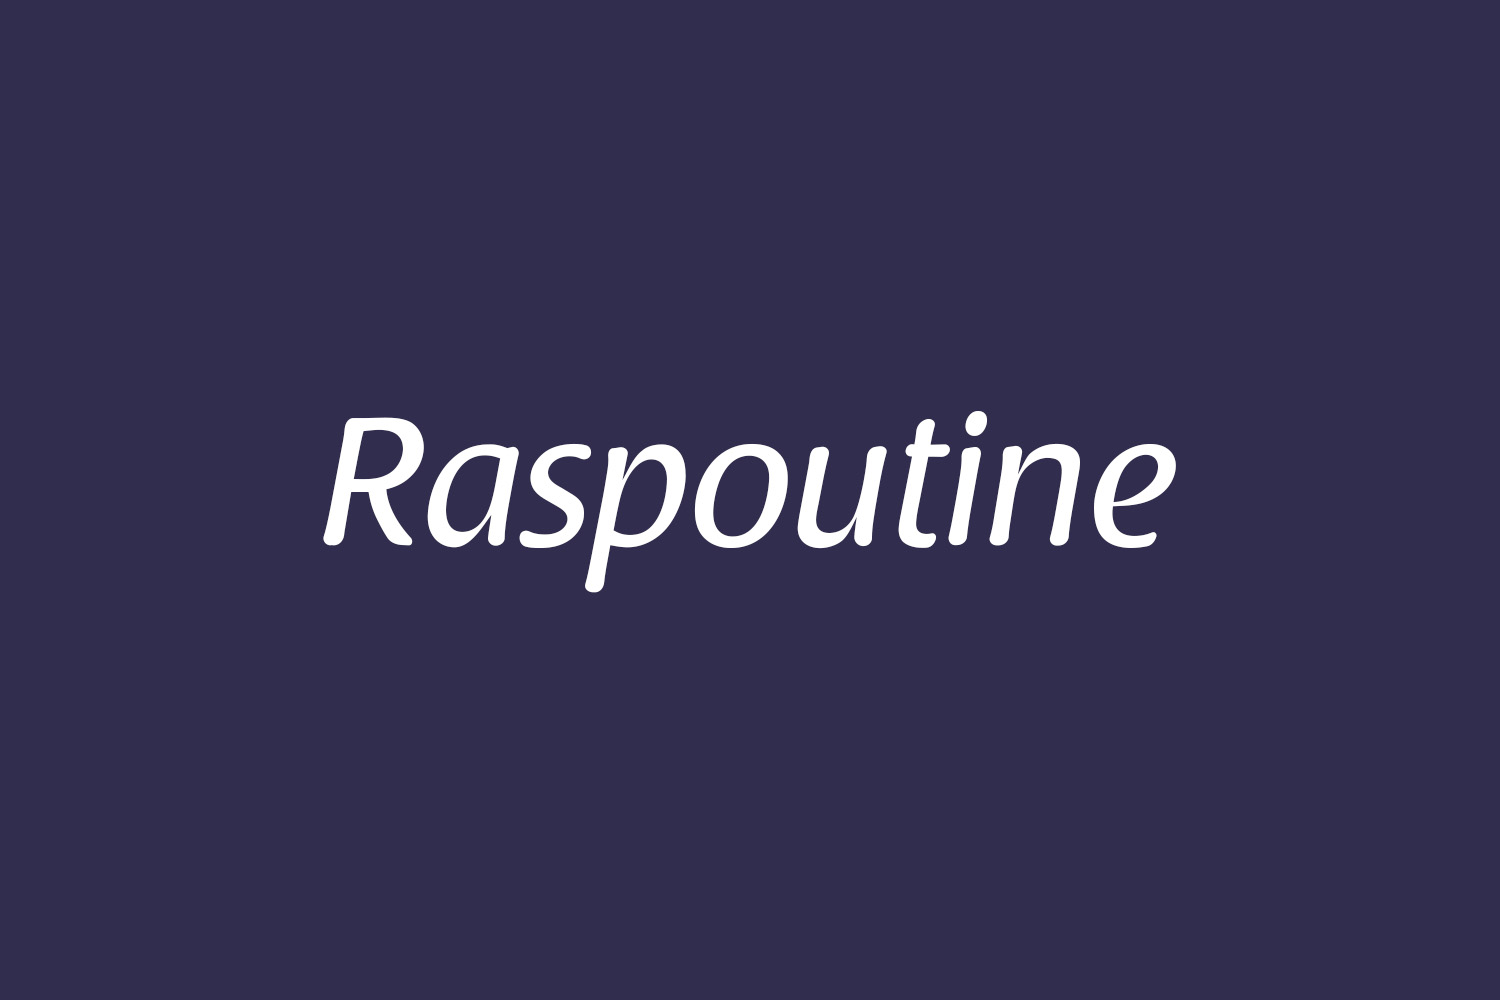 Raspoutine Free Font